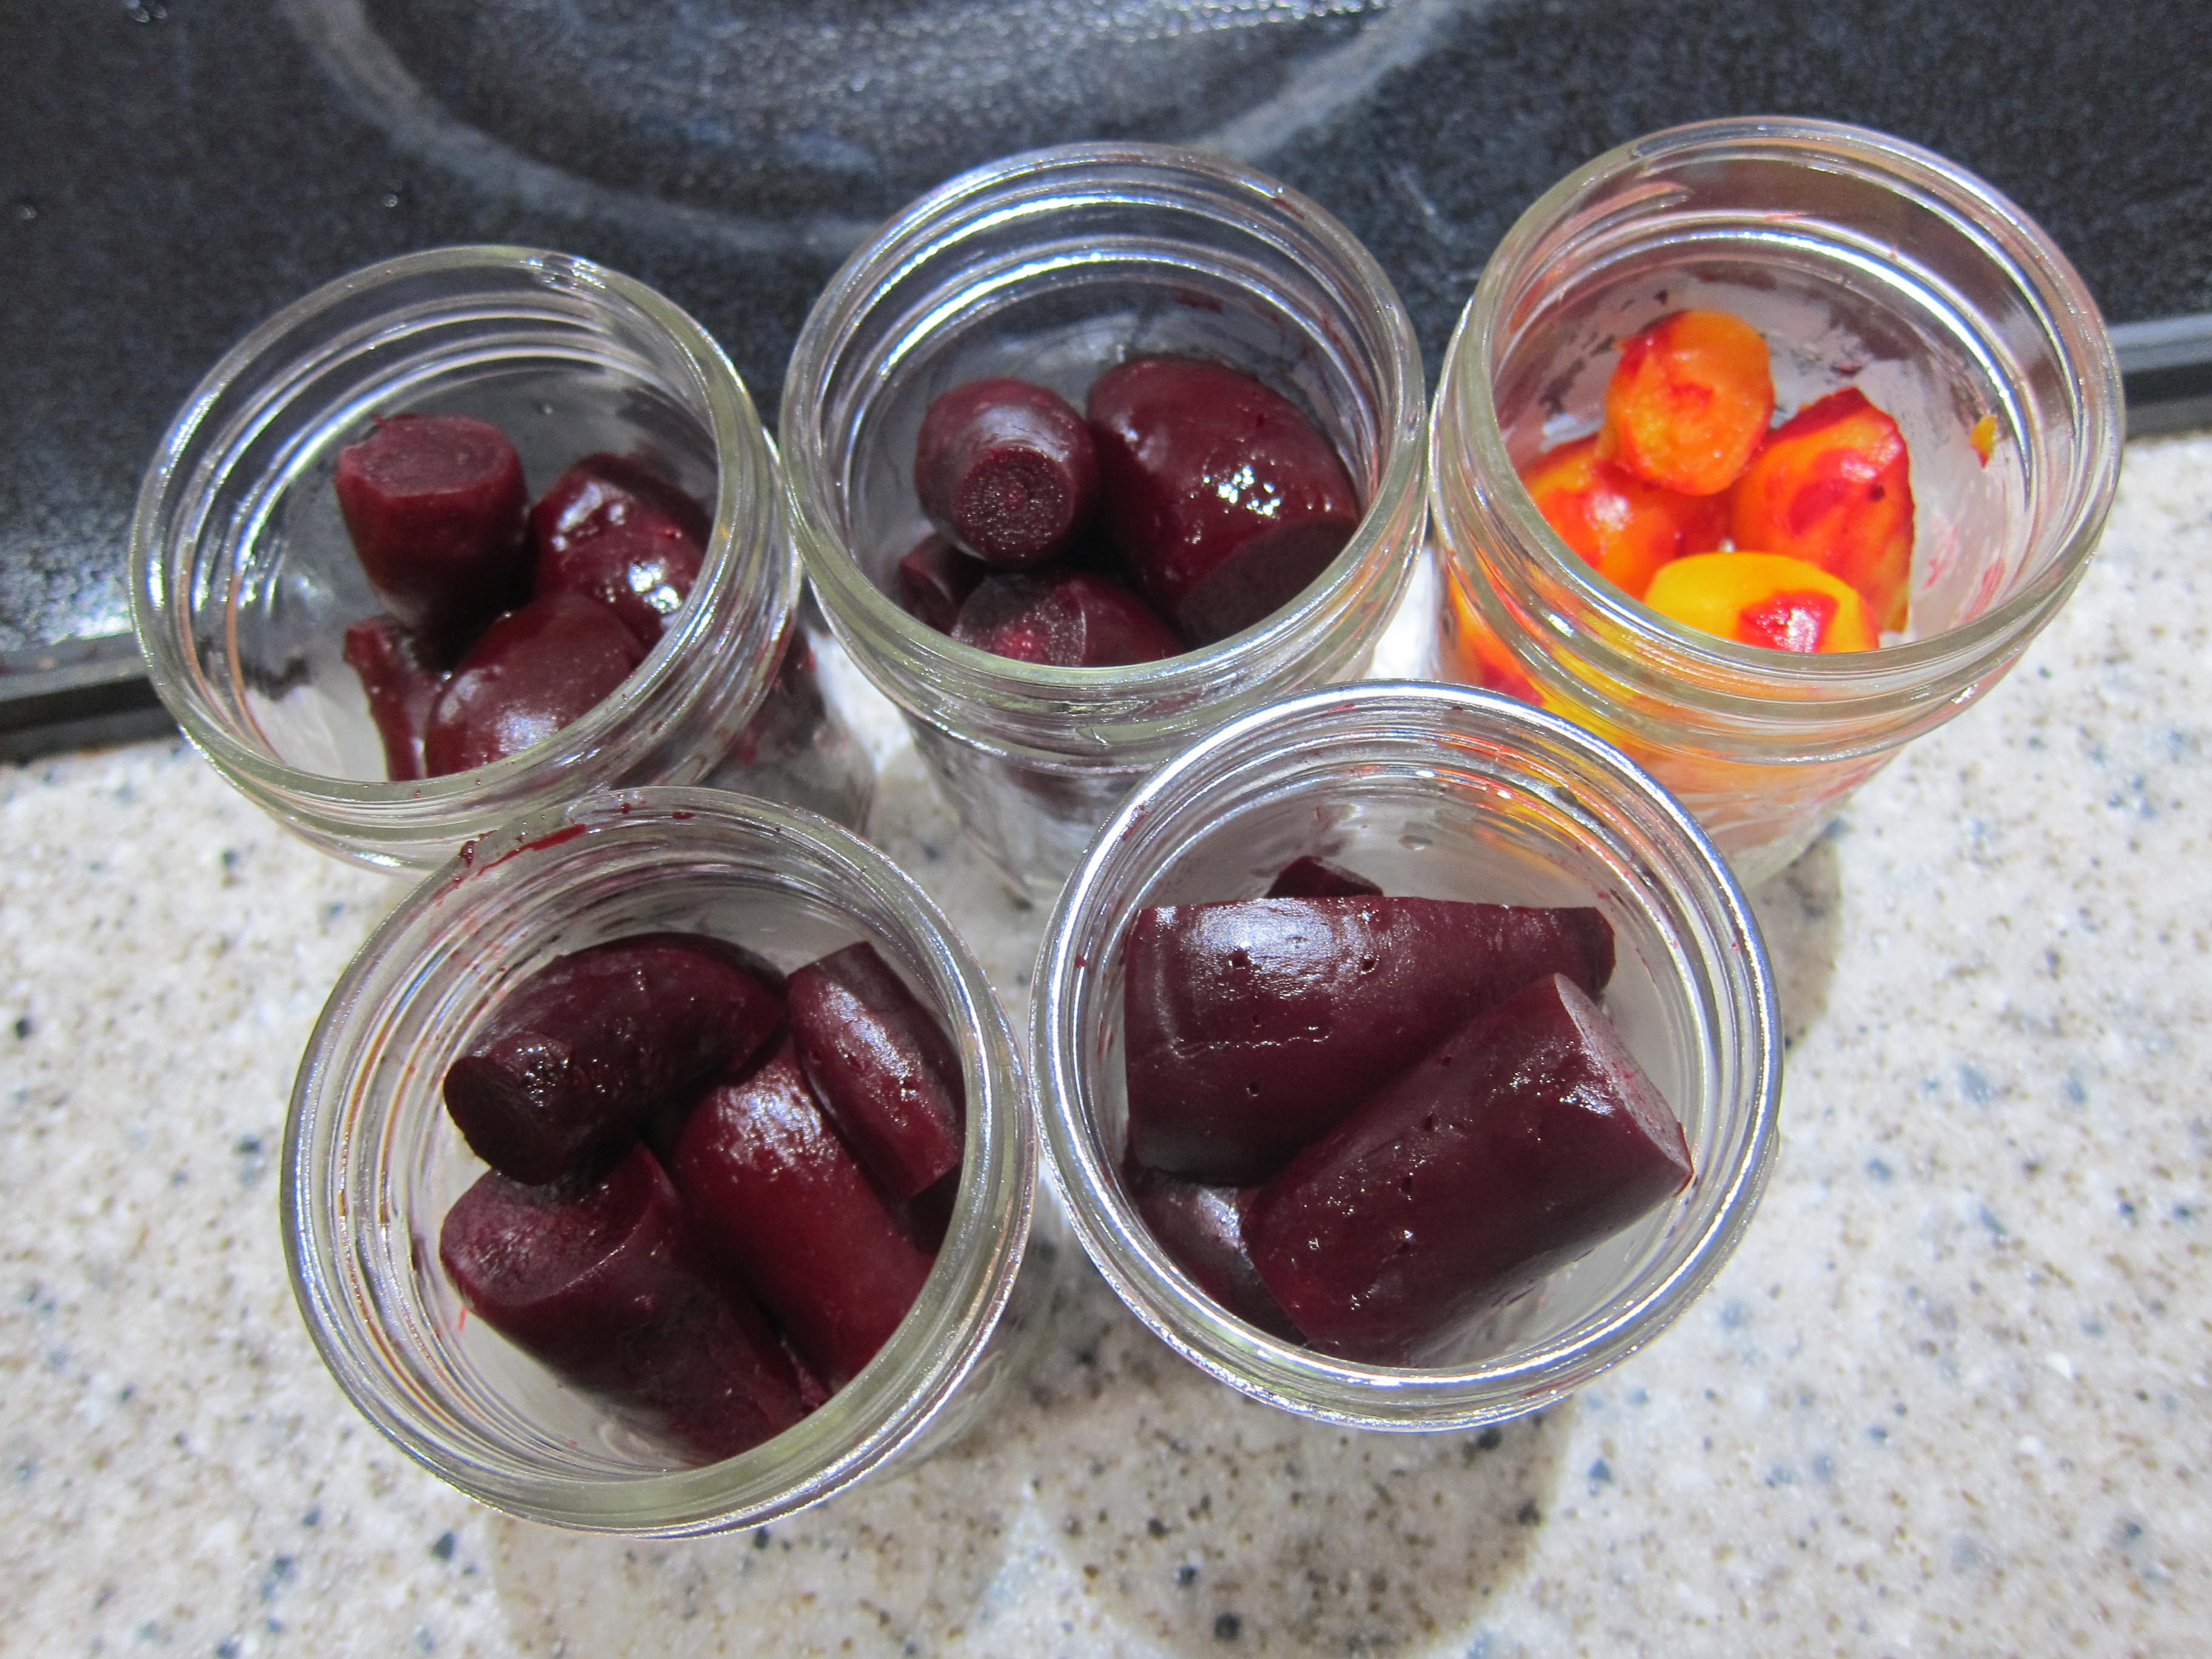 skinned beets in pint jars